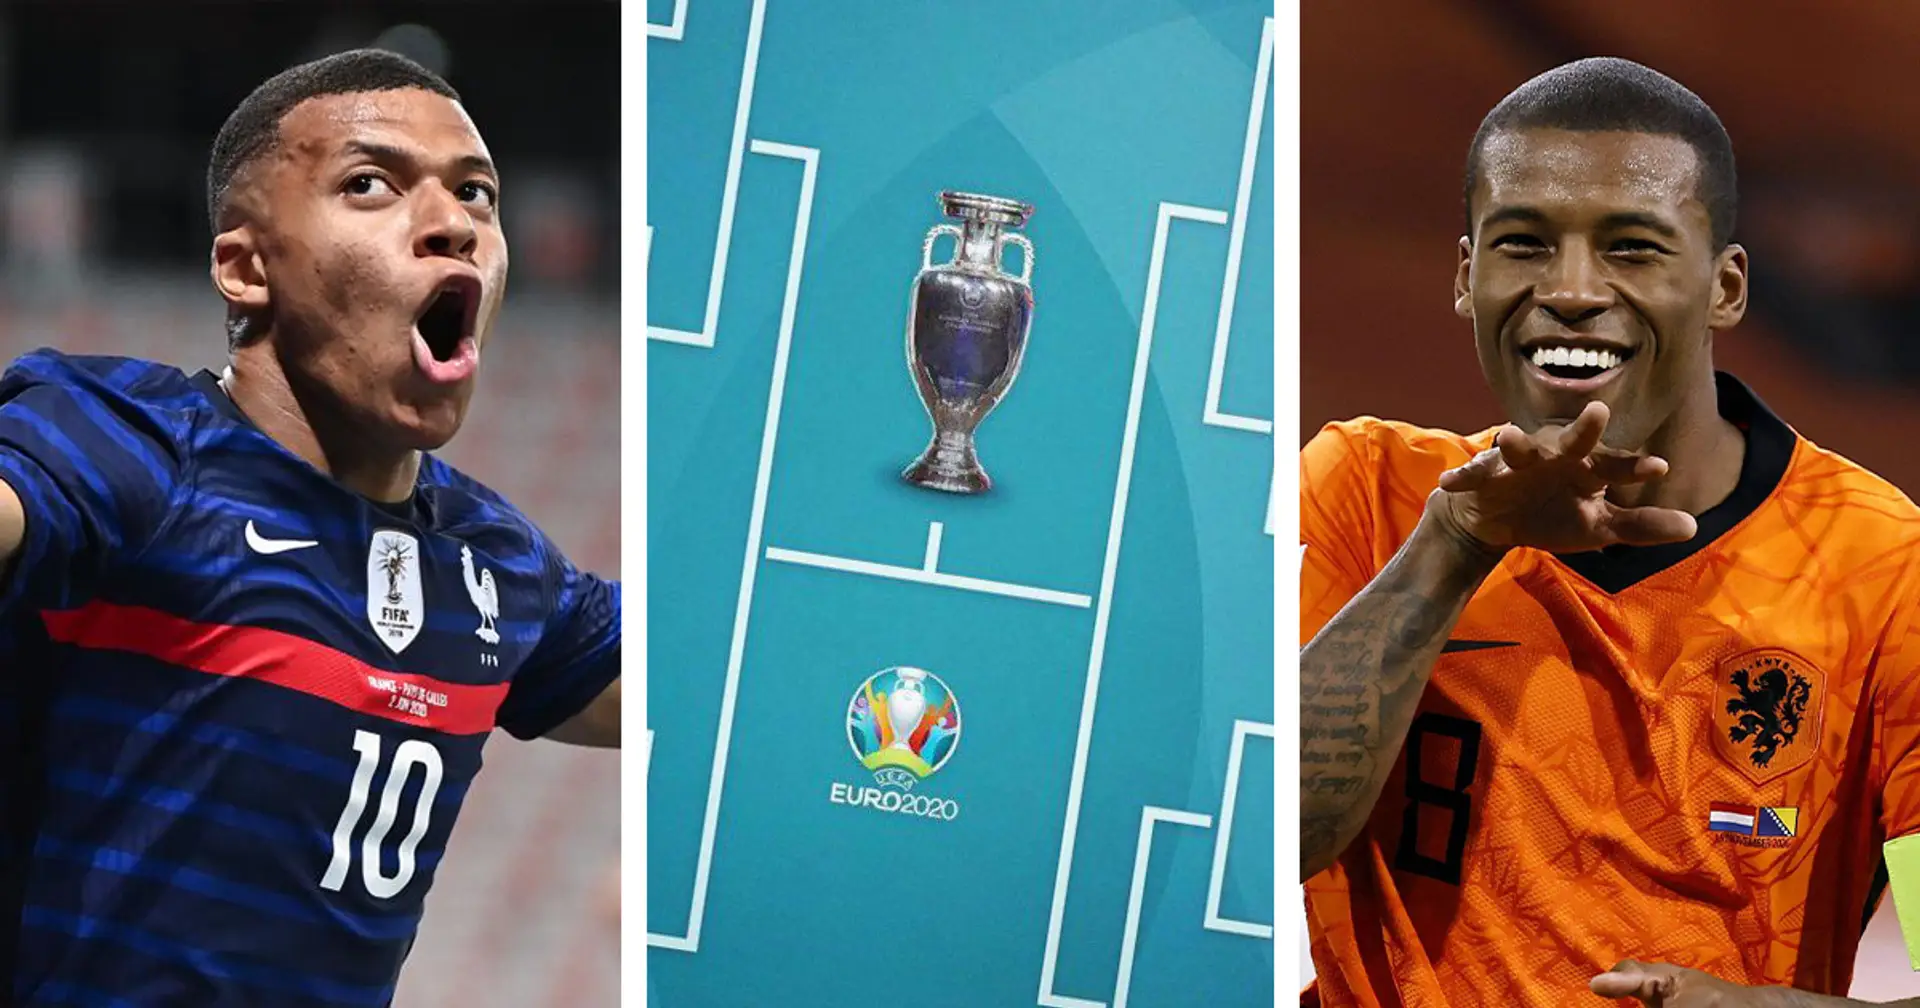 Des joueurs du PSG pourraient-ils s'affronter en finale de l'Euro 2020? Examen du tableau des éliminatoires